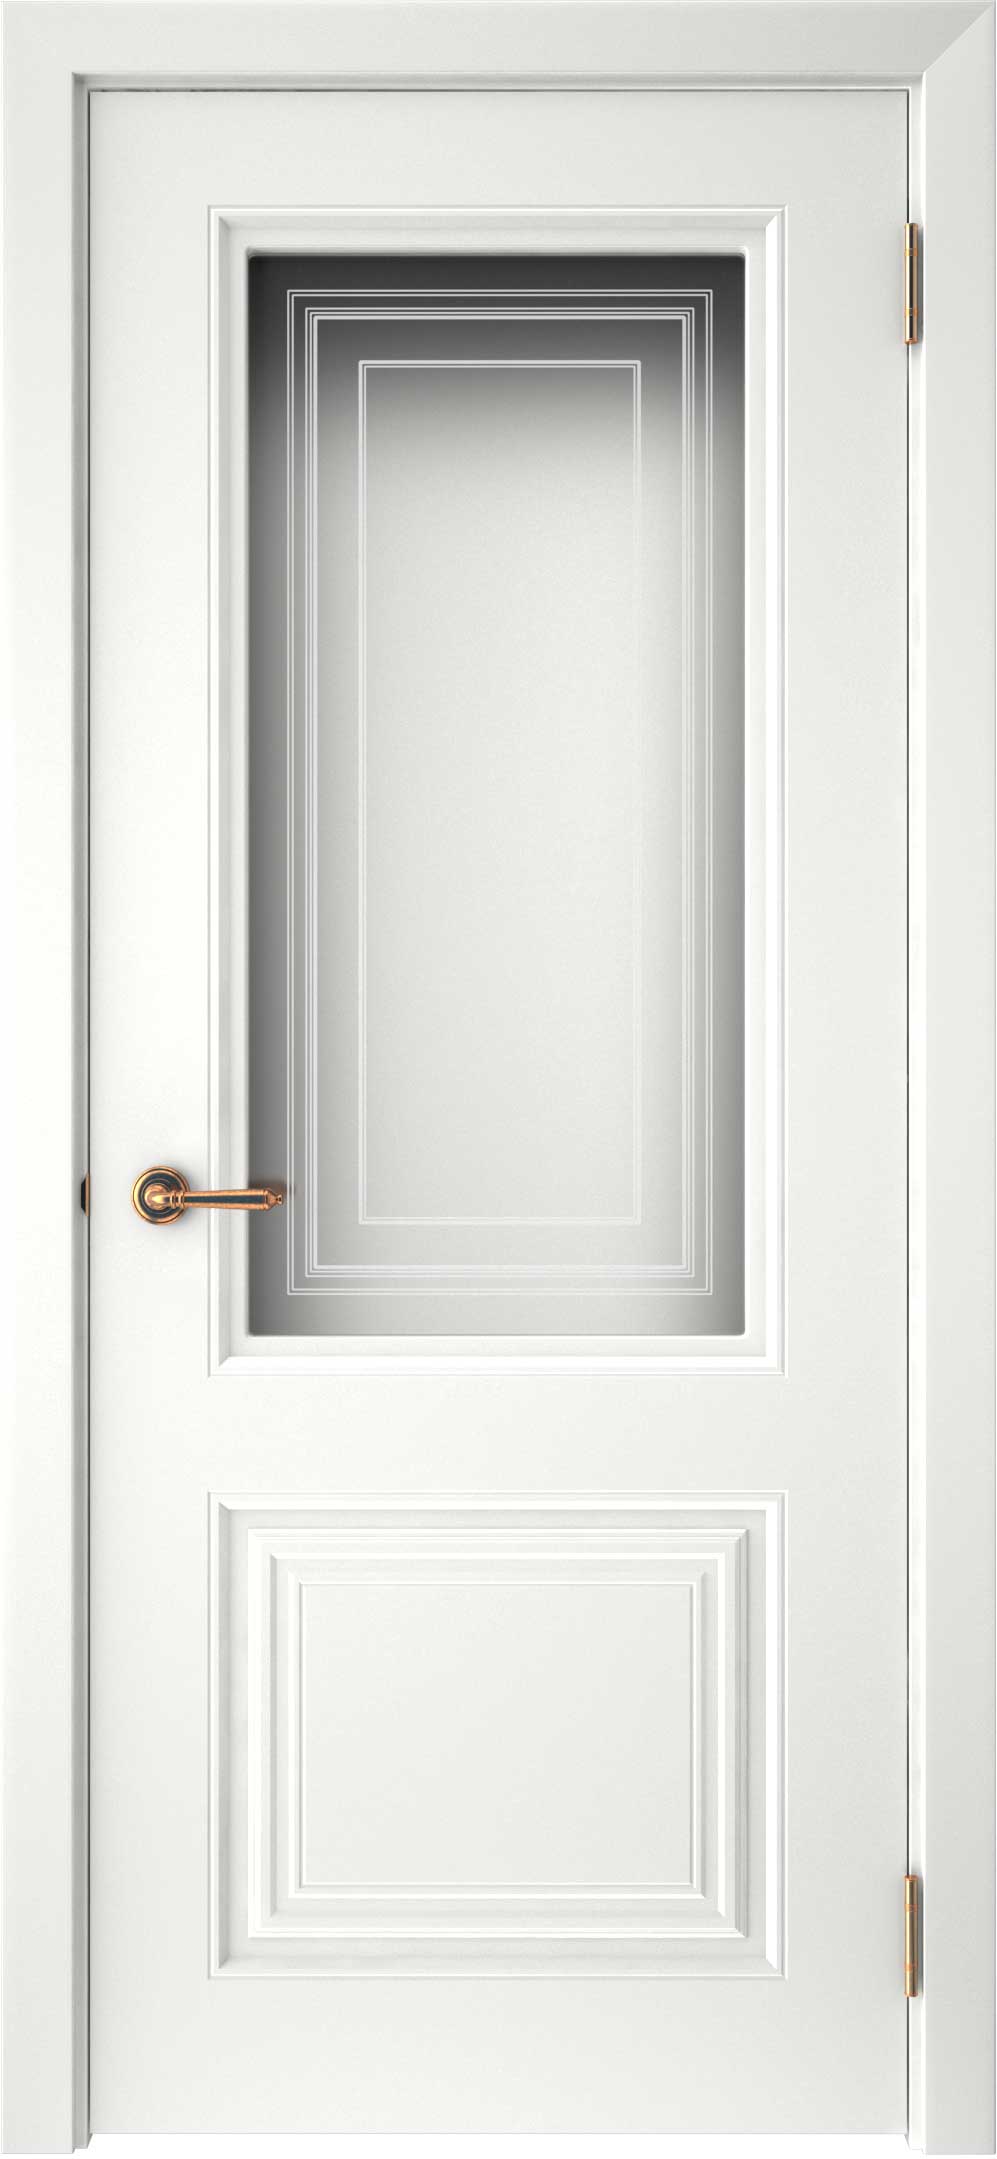 Двери крашеные (Эмаль) ТЕКОНА Смальта-42 со стеклом Белый ral размер 200 х 70 см. артикул F0000093290